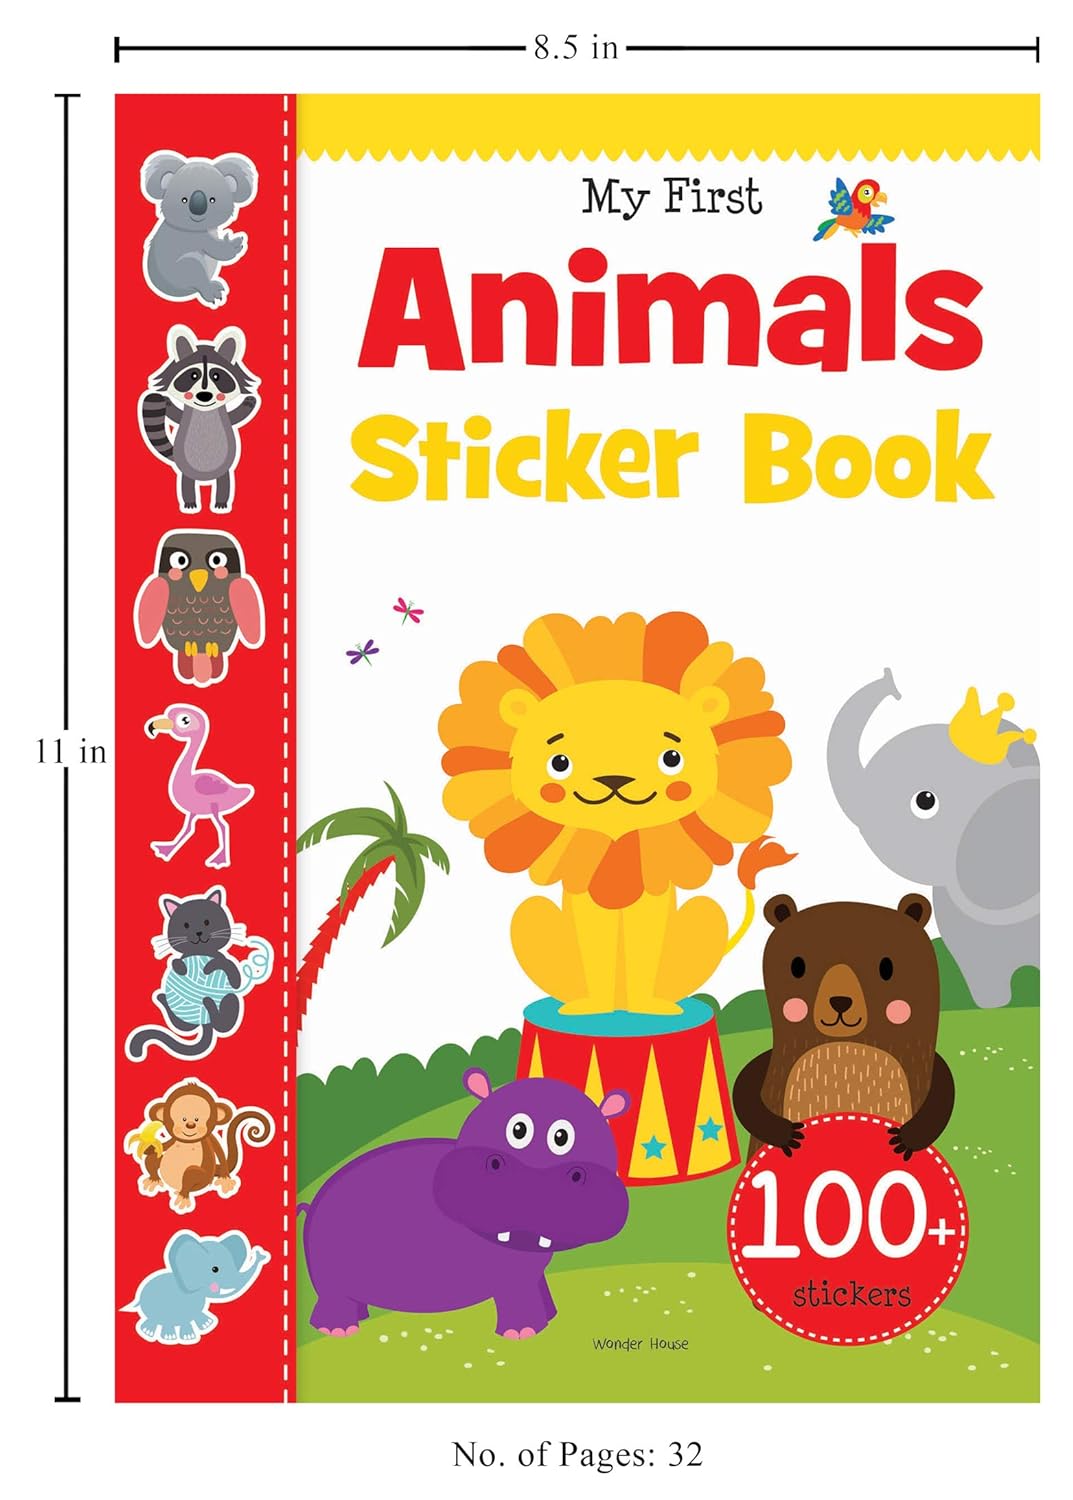 My First Animals Sticker Book